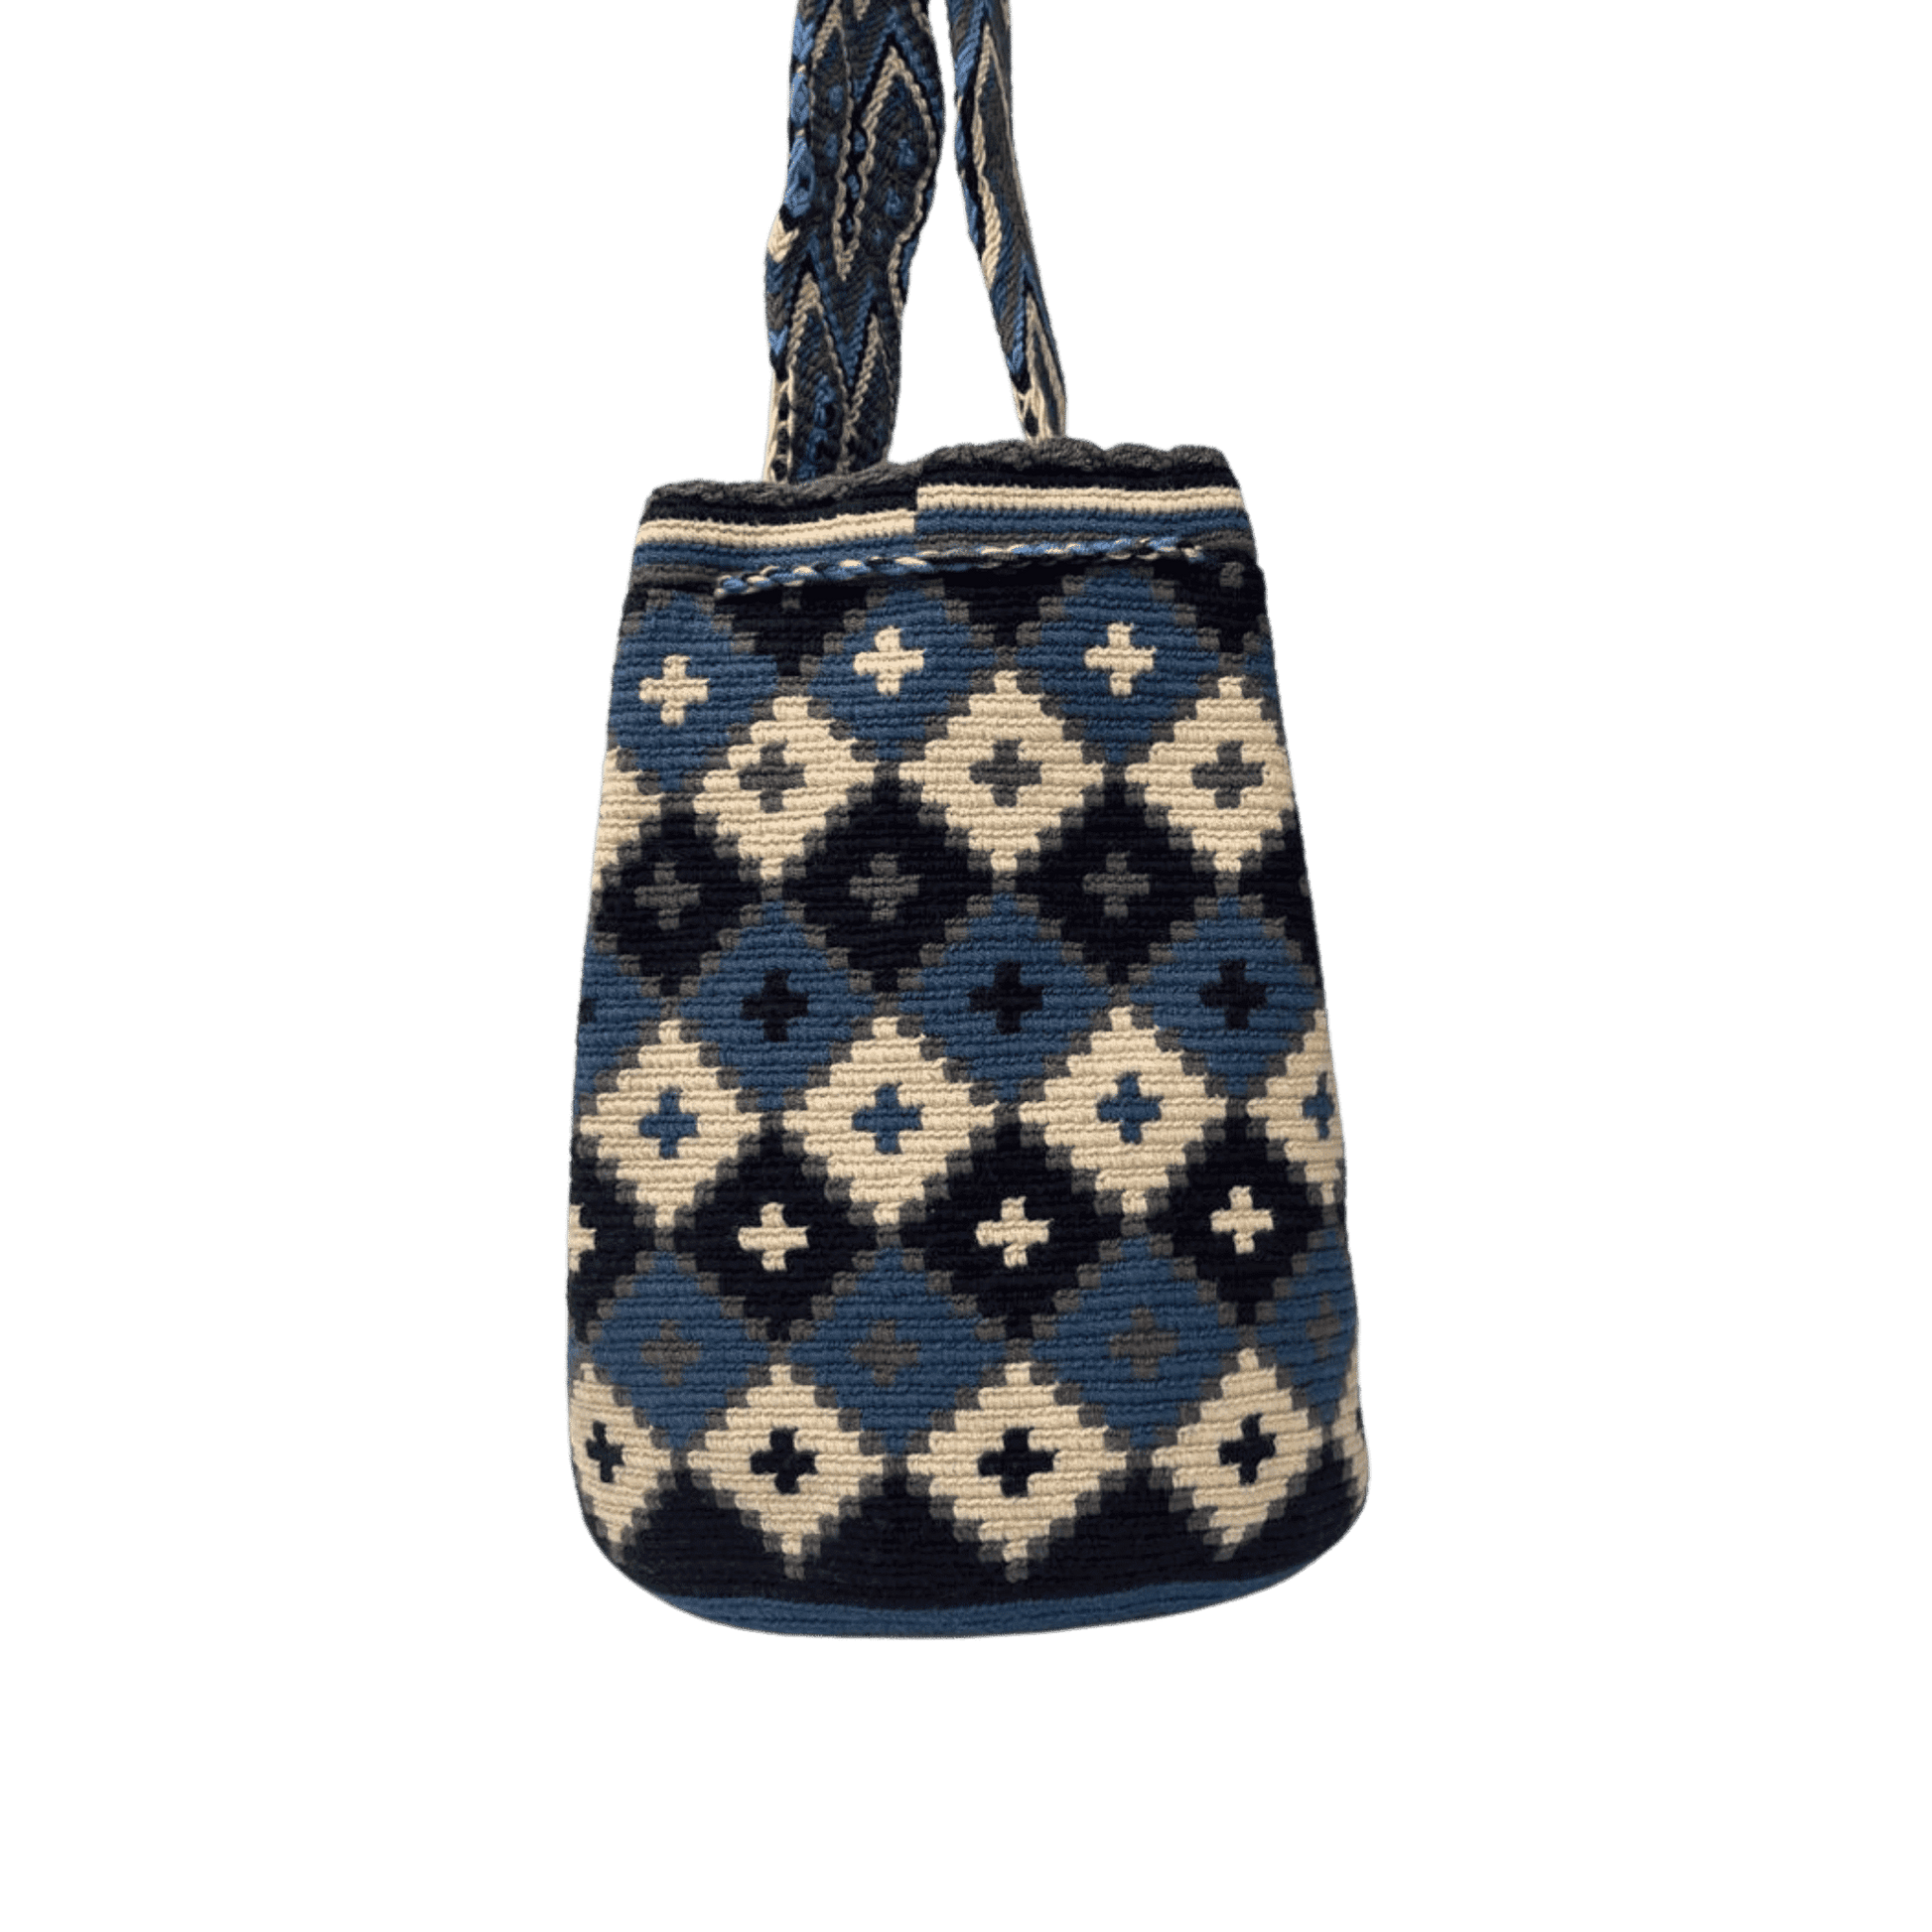 Mochila wayuu original con tejido de rombos y cruces azules y beige 